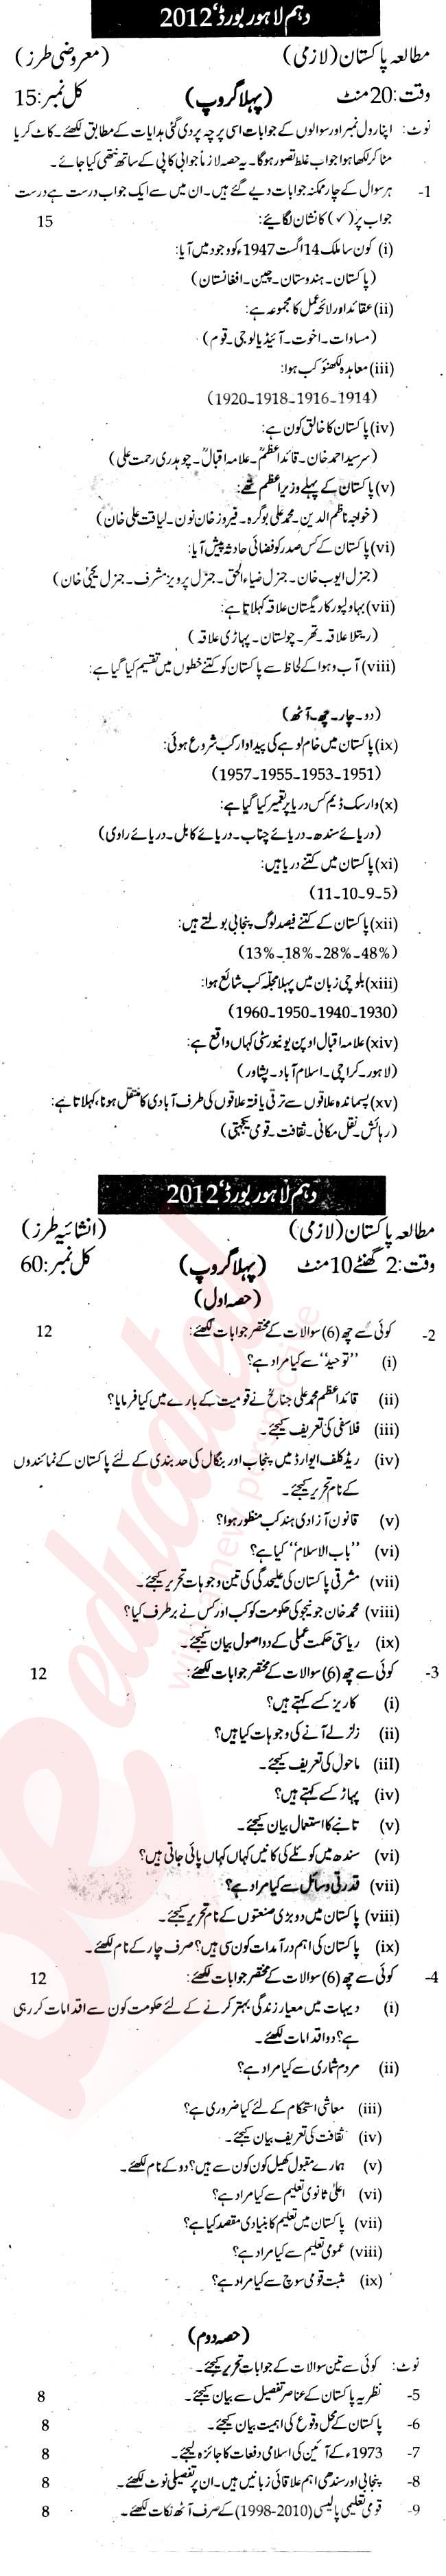 Pak Studies 10th class Past Paper Group 1 BISE Lahore 2012